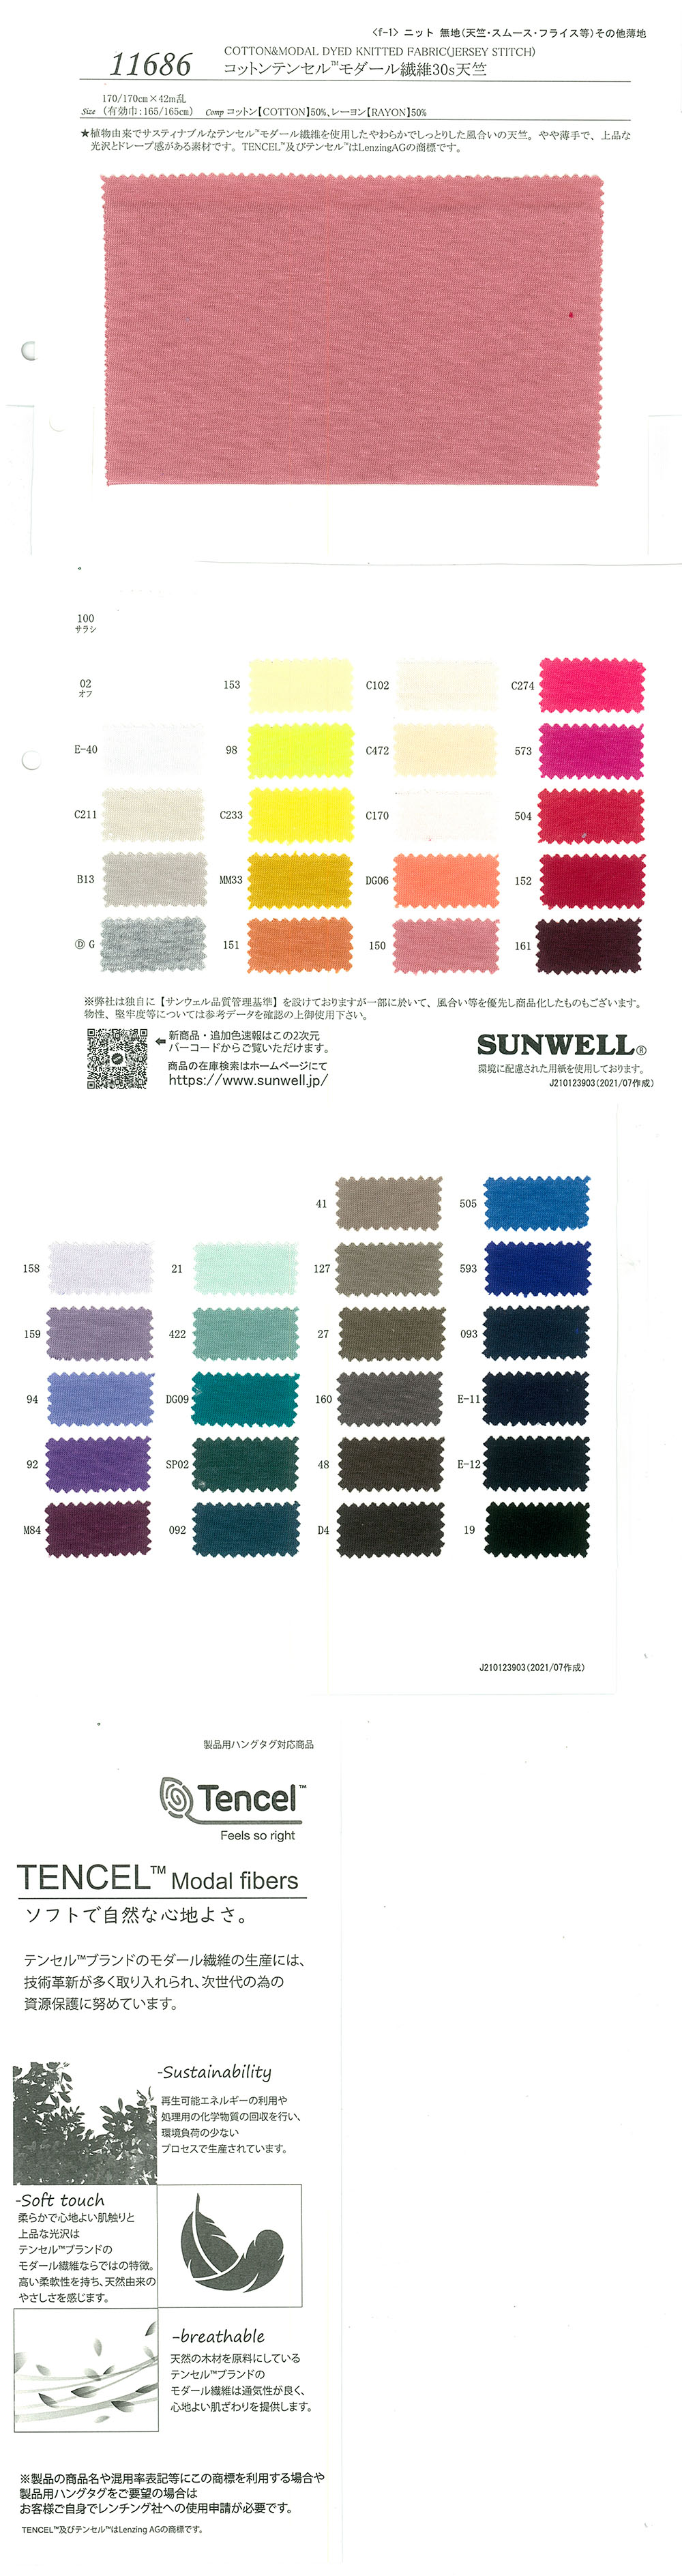 11686 Algodón/Tencel™ Fibra Modal 30 Jersey De Un Solo Hilo[Fabrica Textil] SUNWELL